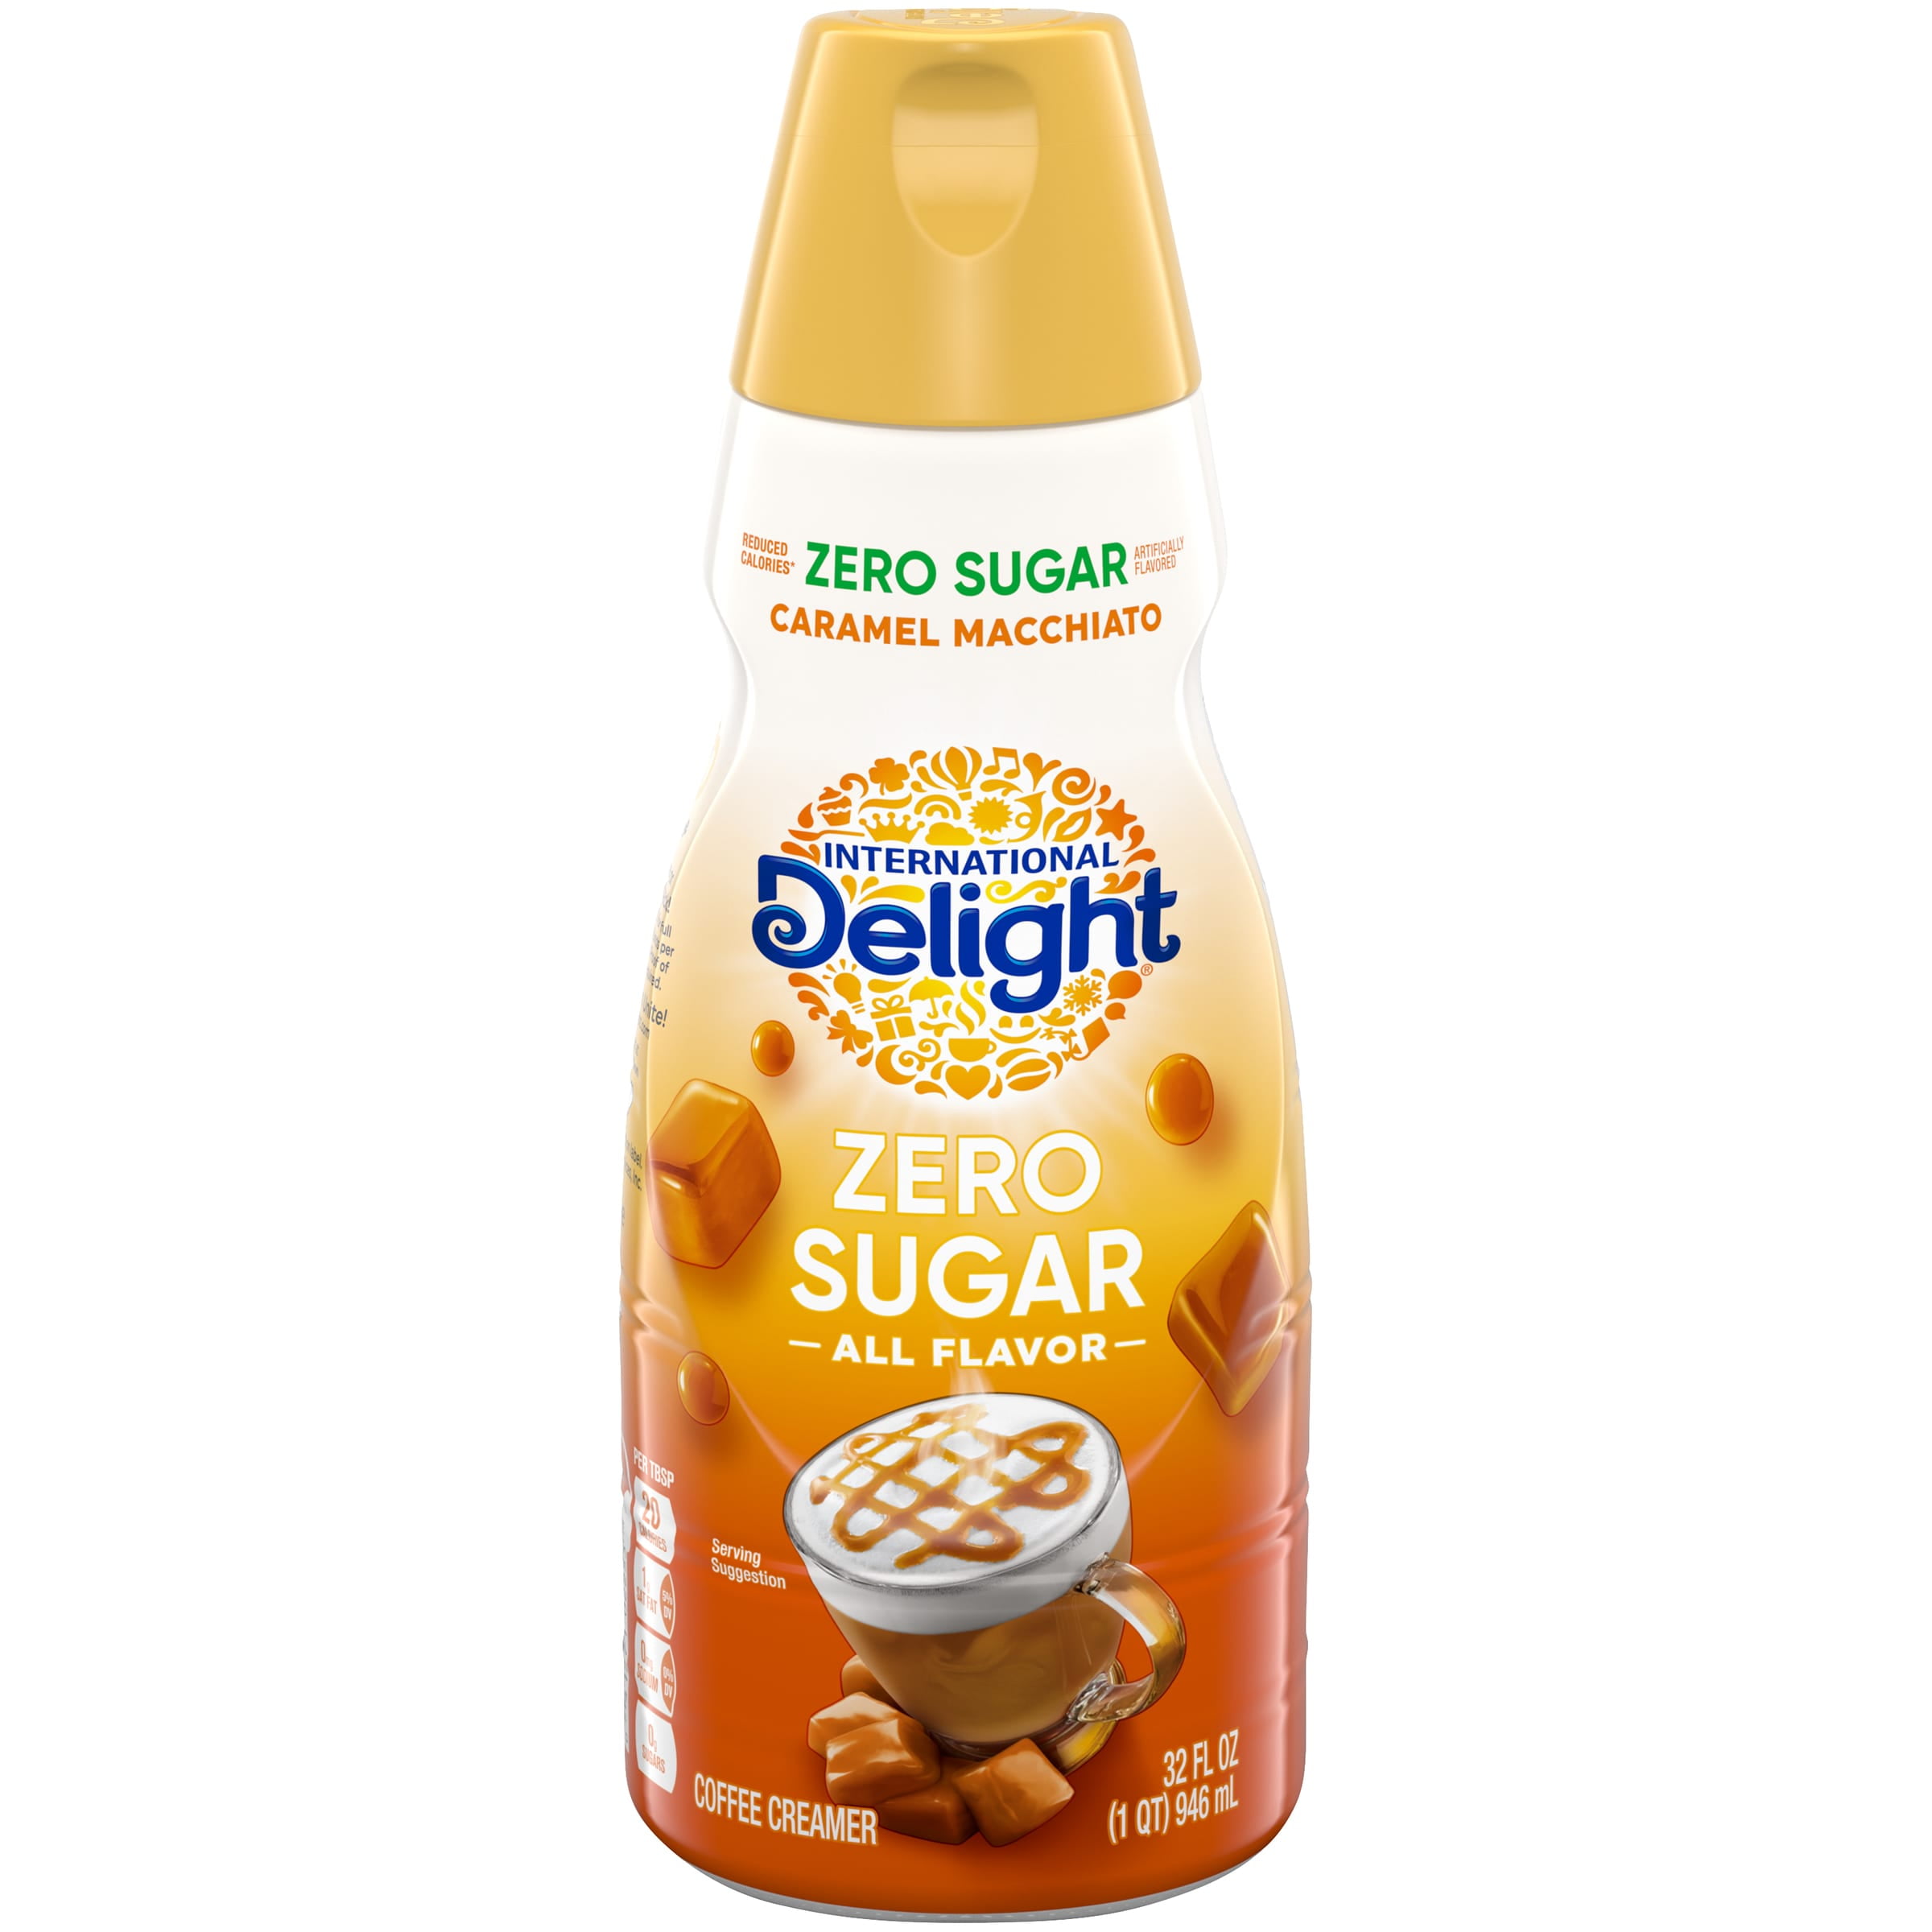 International Delight Sugar-Free, Zero Sugar Caramel Macchiato Coffee